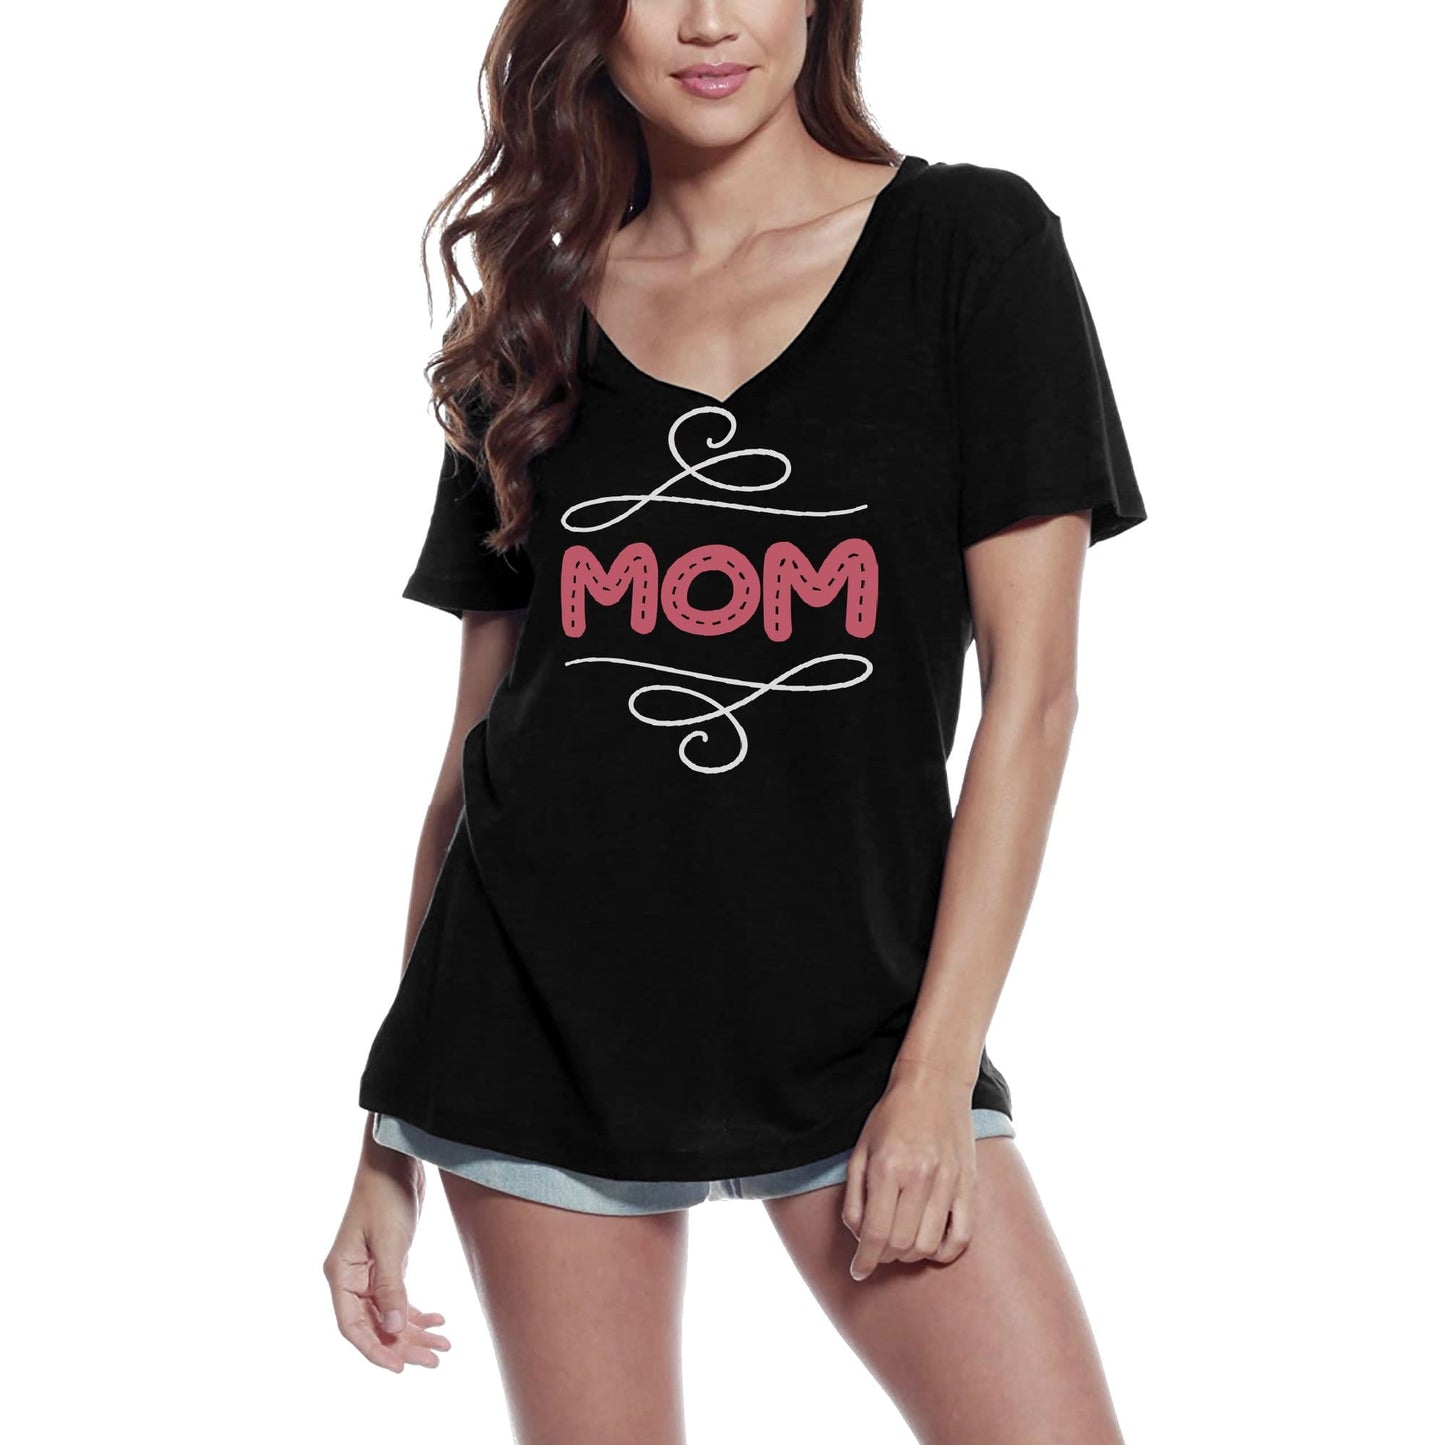 ULTRABASIC Women's V-Neck T-Shirt Mom - Short Sleeve Tee Shirt Tops